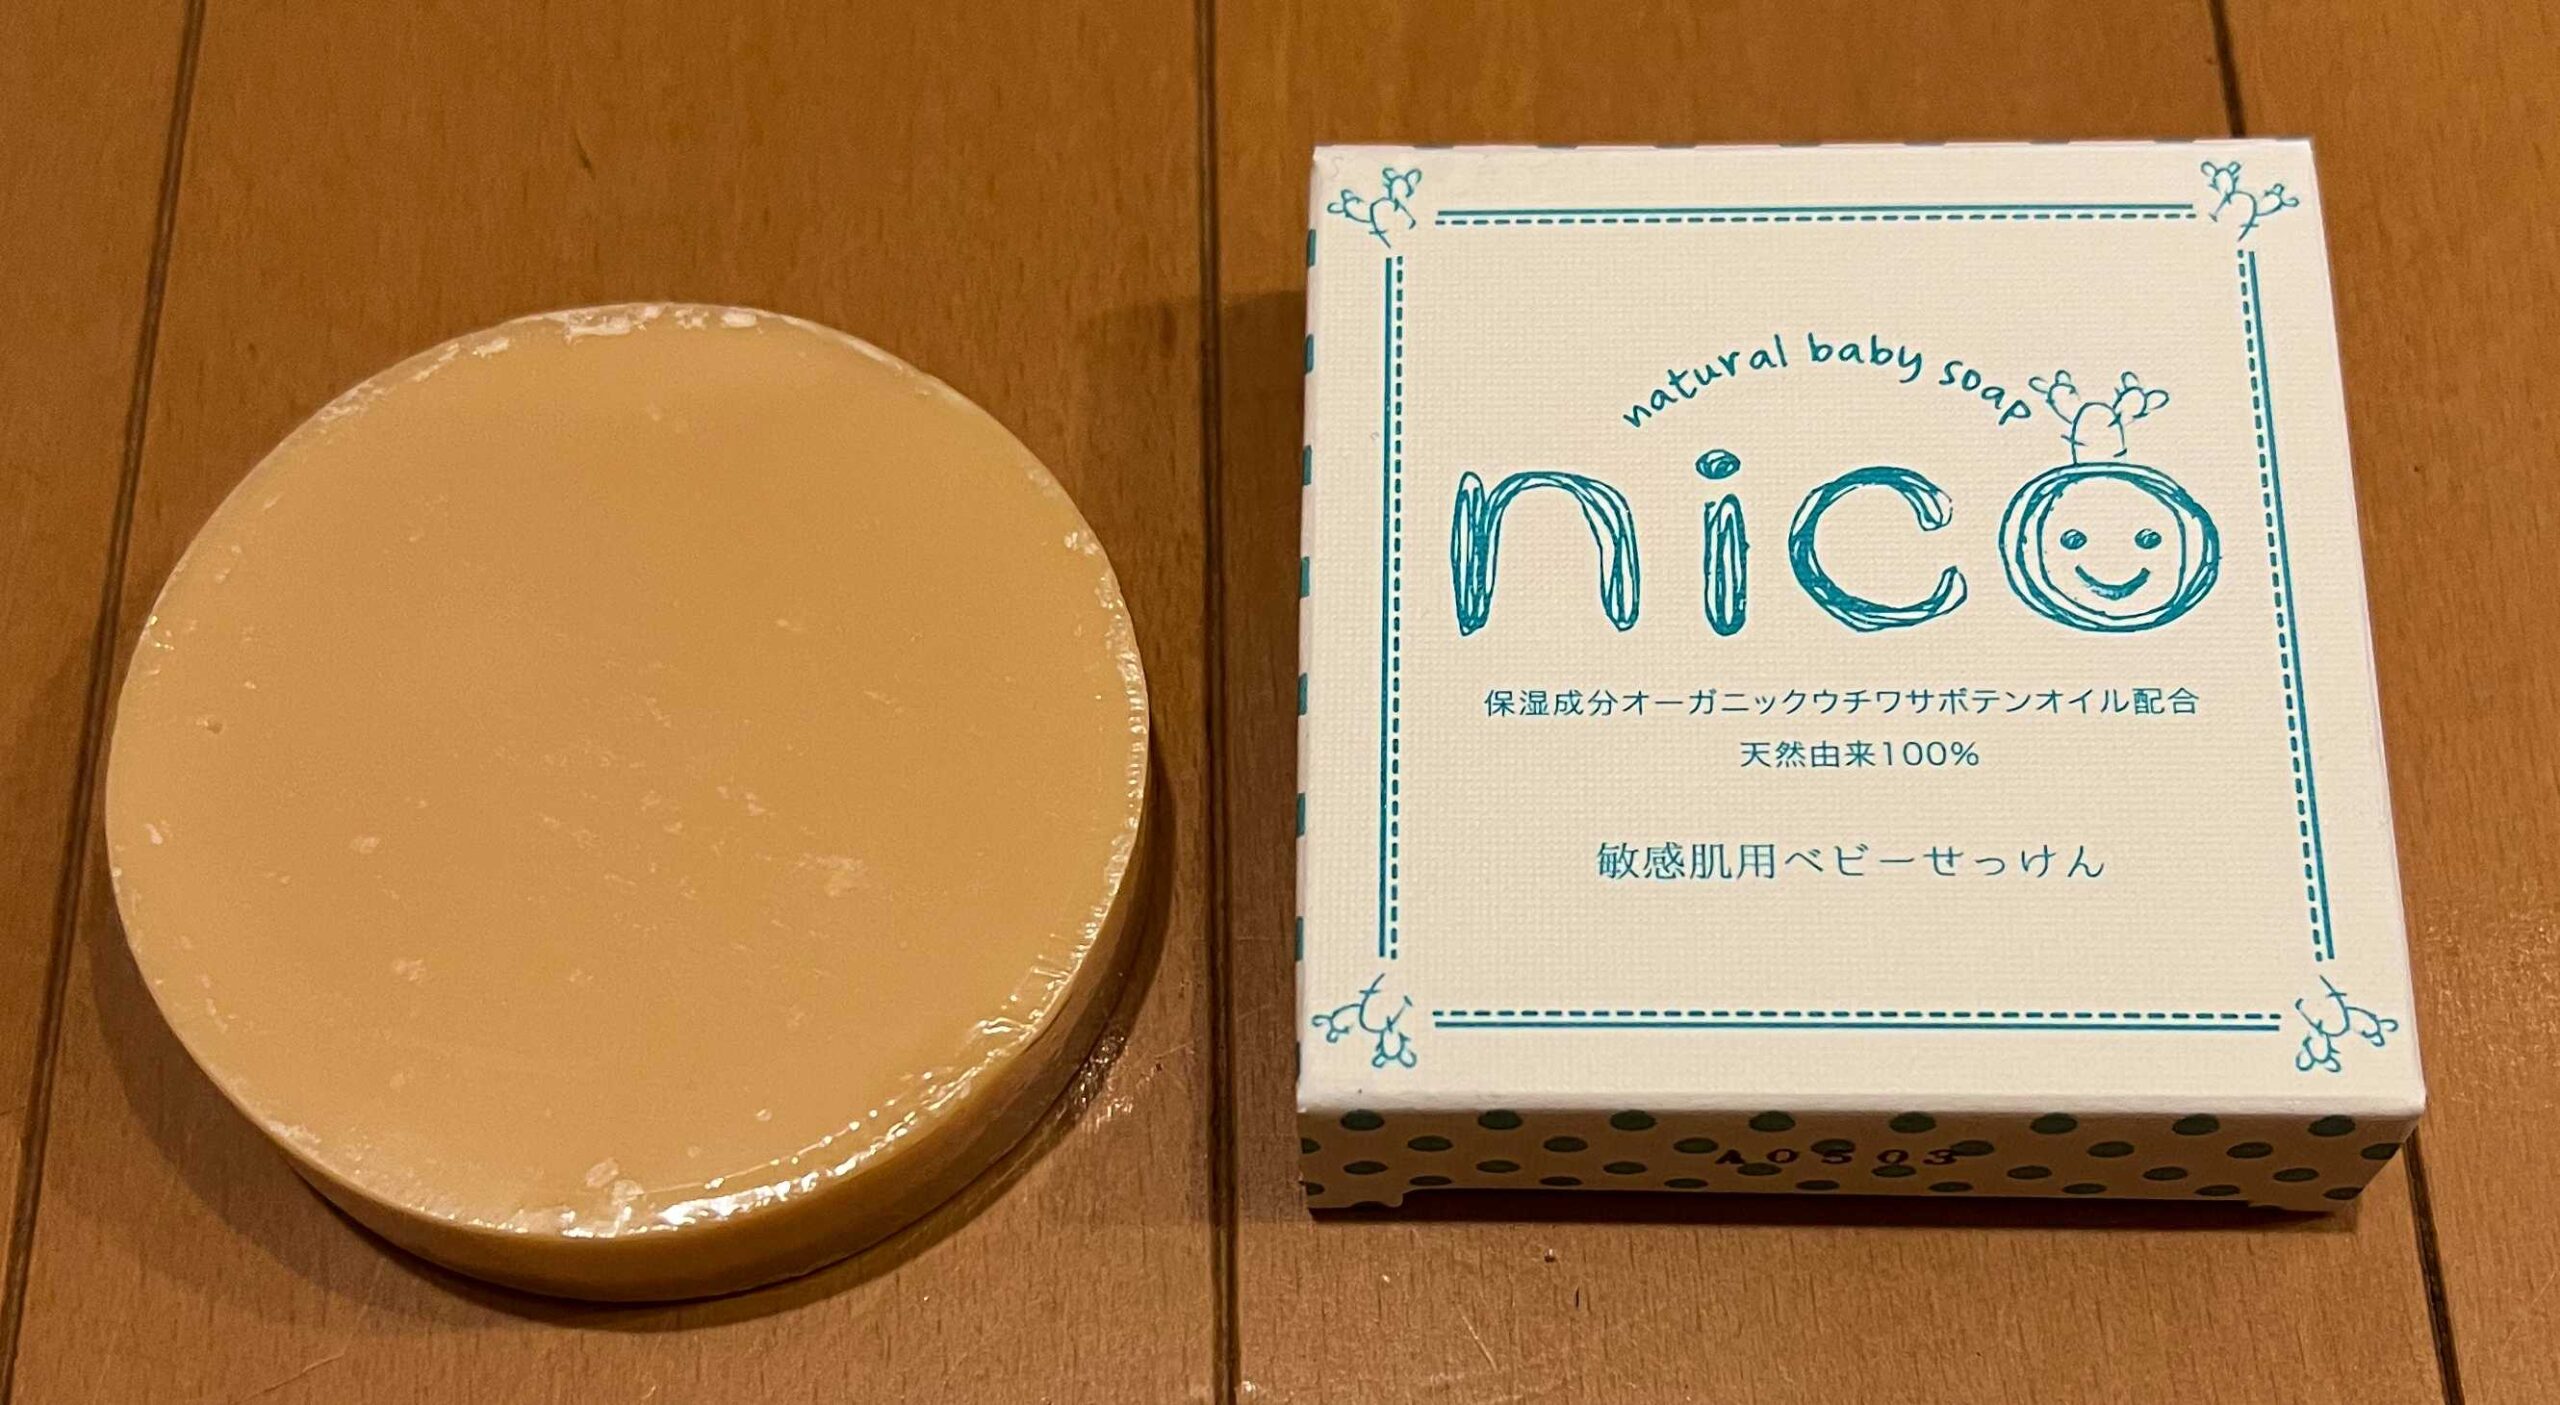 nico石鹸